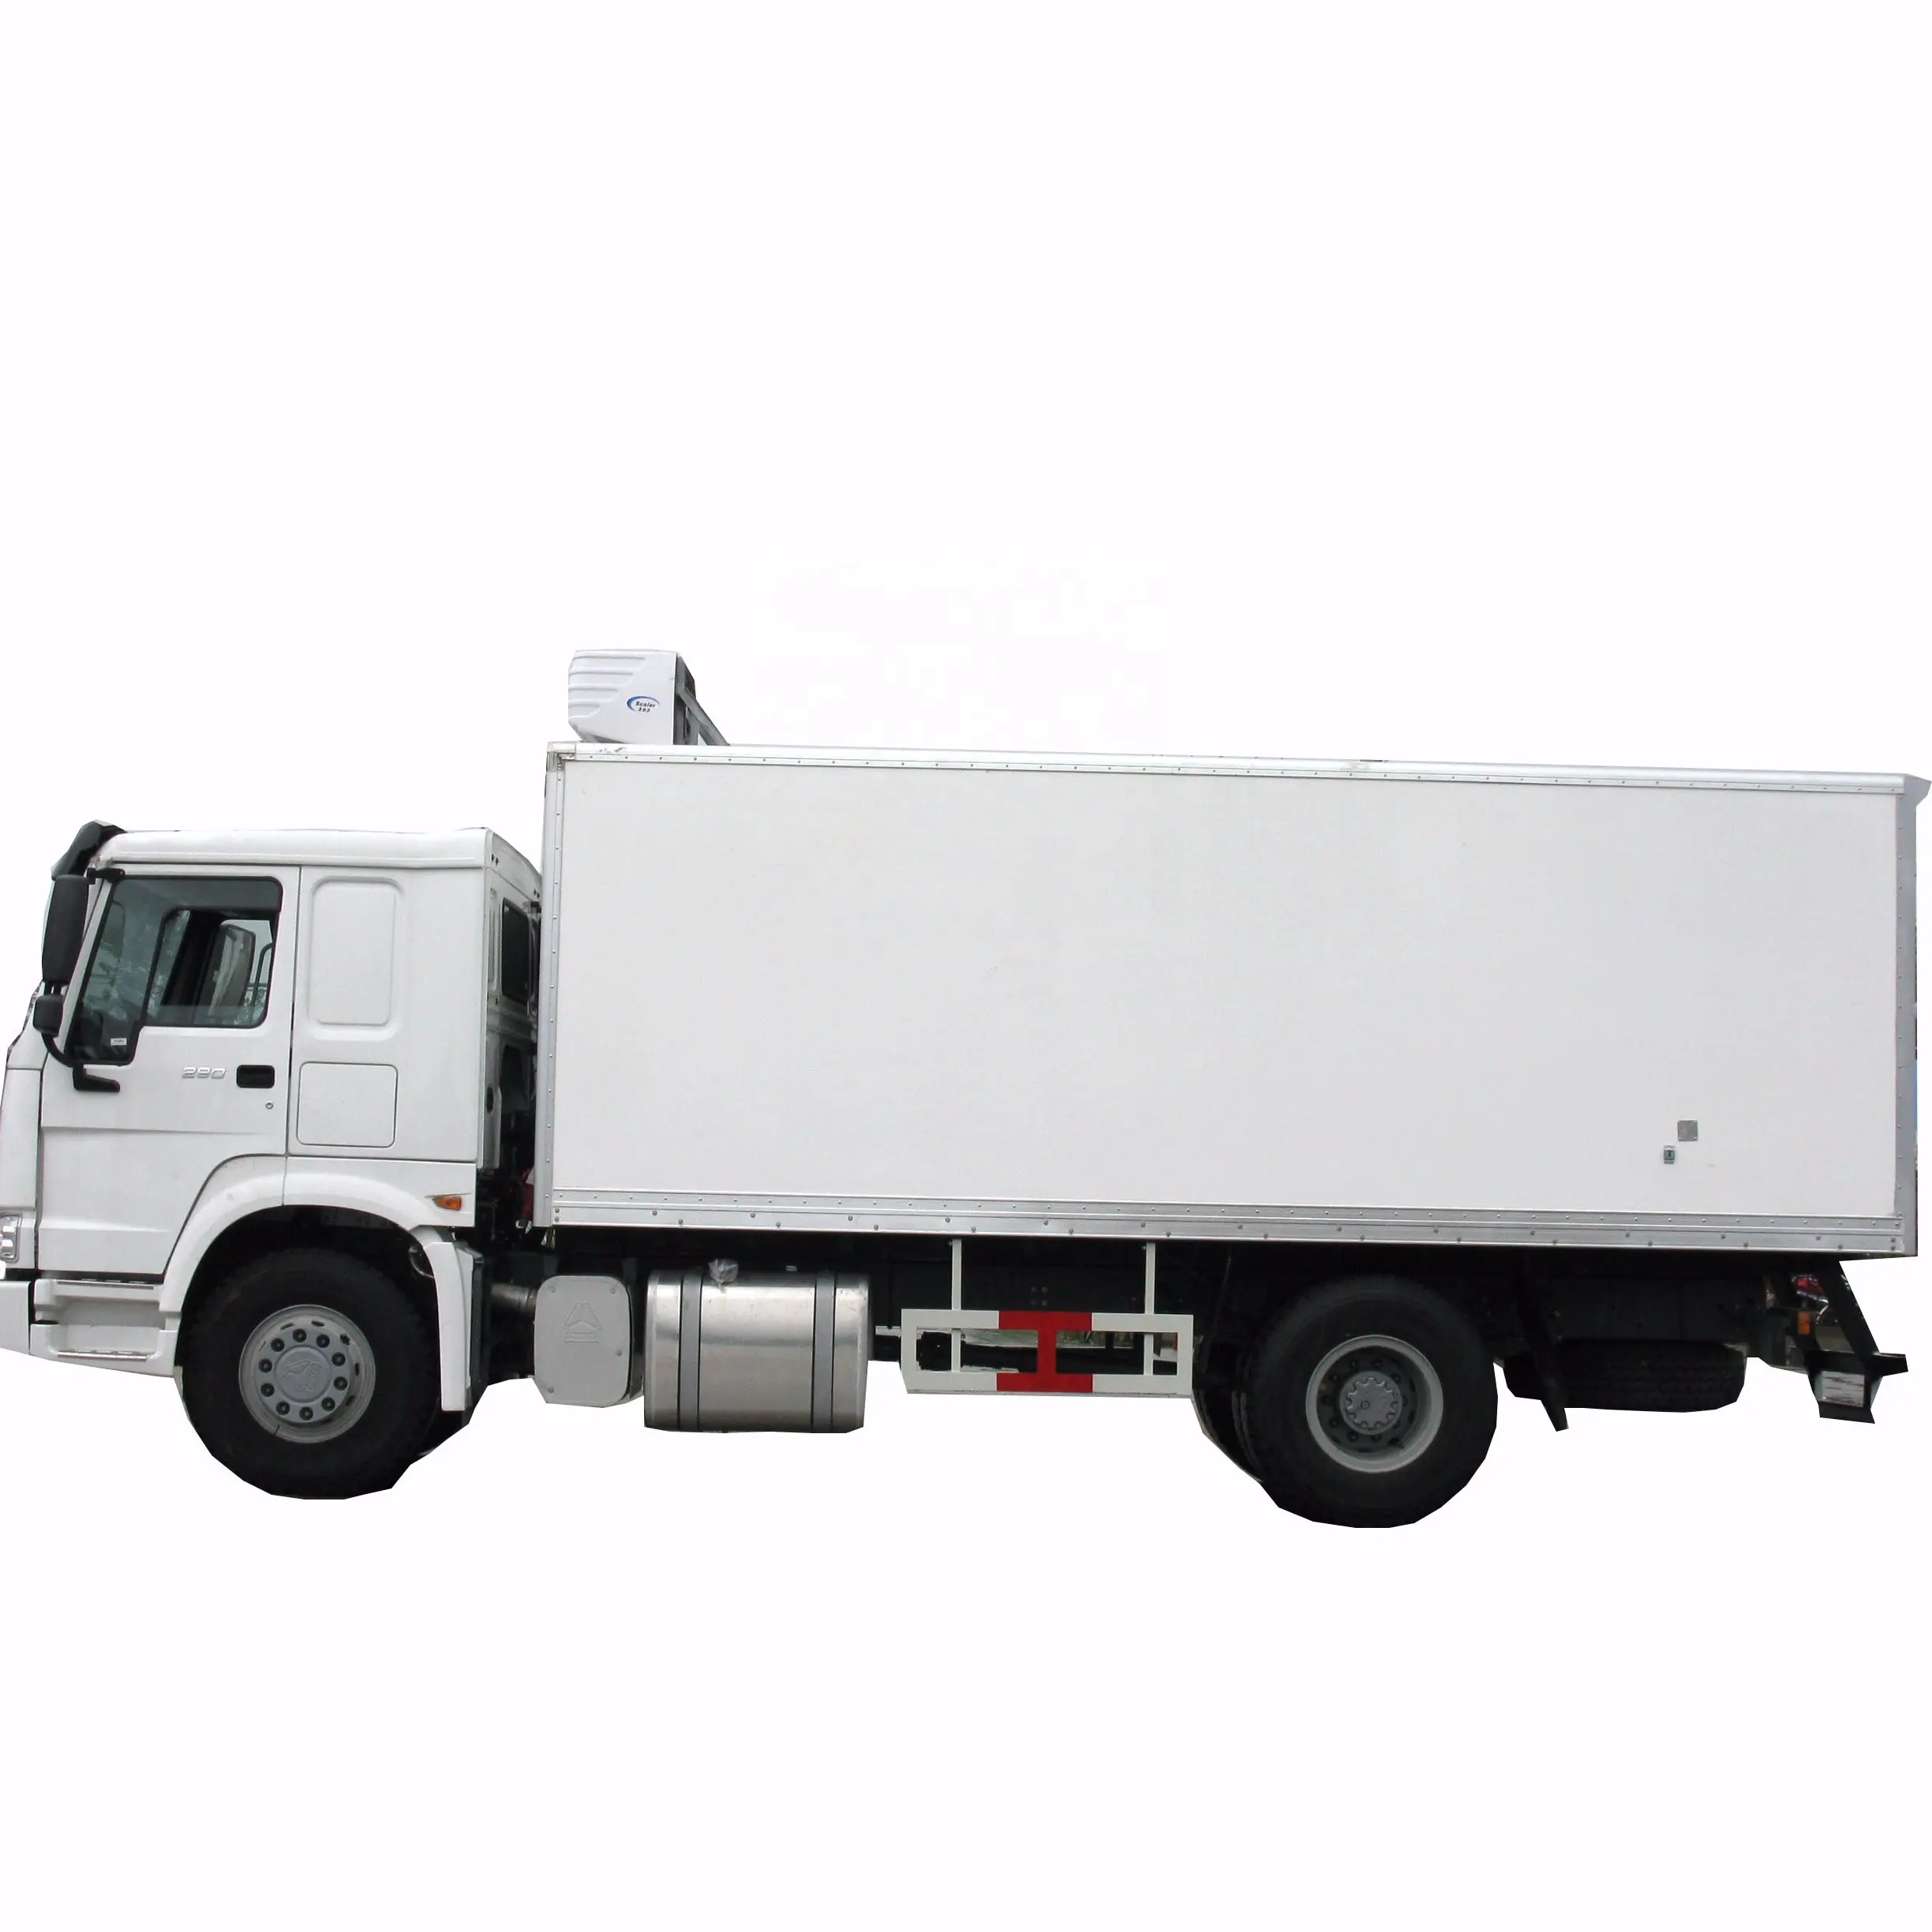 HOWO 4x2 खाद्य ट्रक प्रशीतित फ्रीजर ट्रक 10 टन बॉक्स थर्मो राजा ट्रक प्रशीतन इकाइयों बिक्री के लिए फ्रीजर सबसे अच्छी कीमत